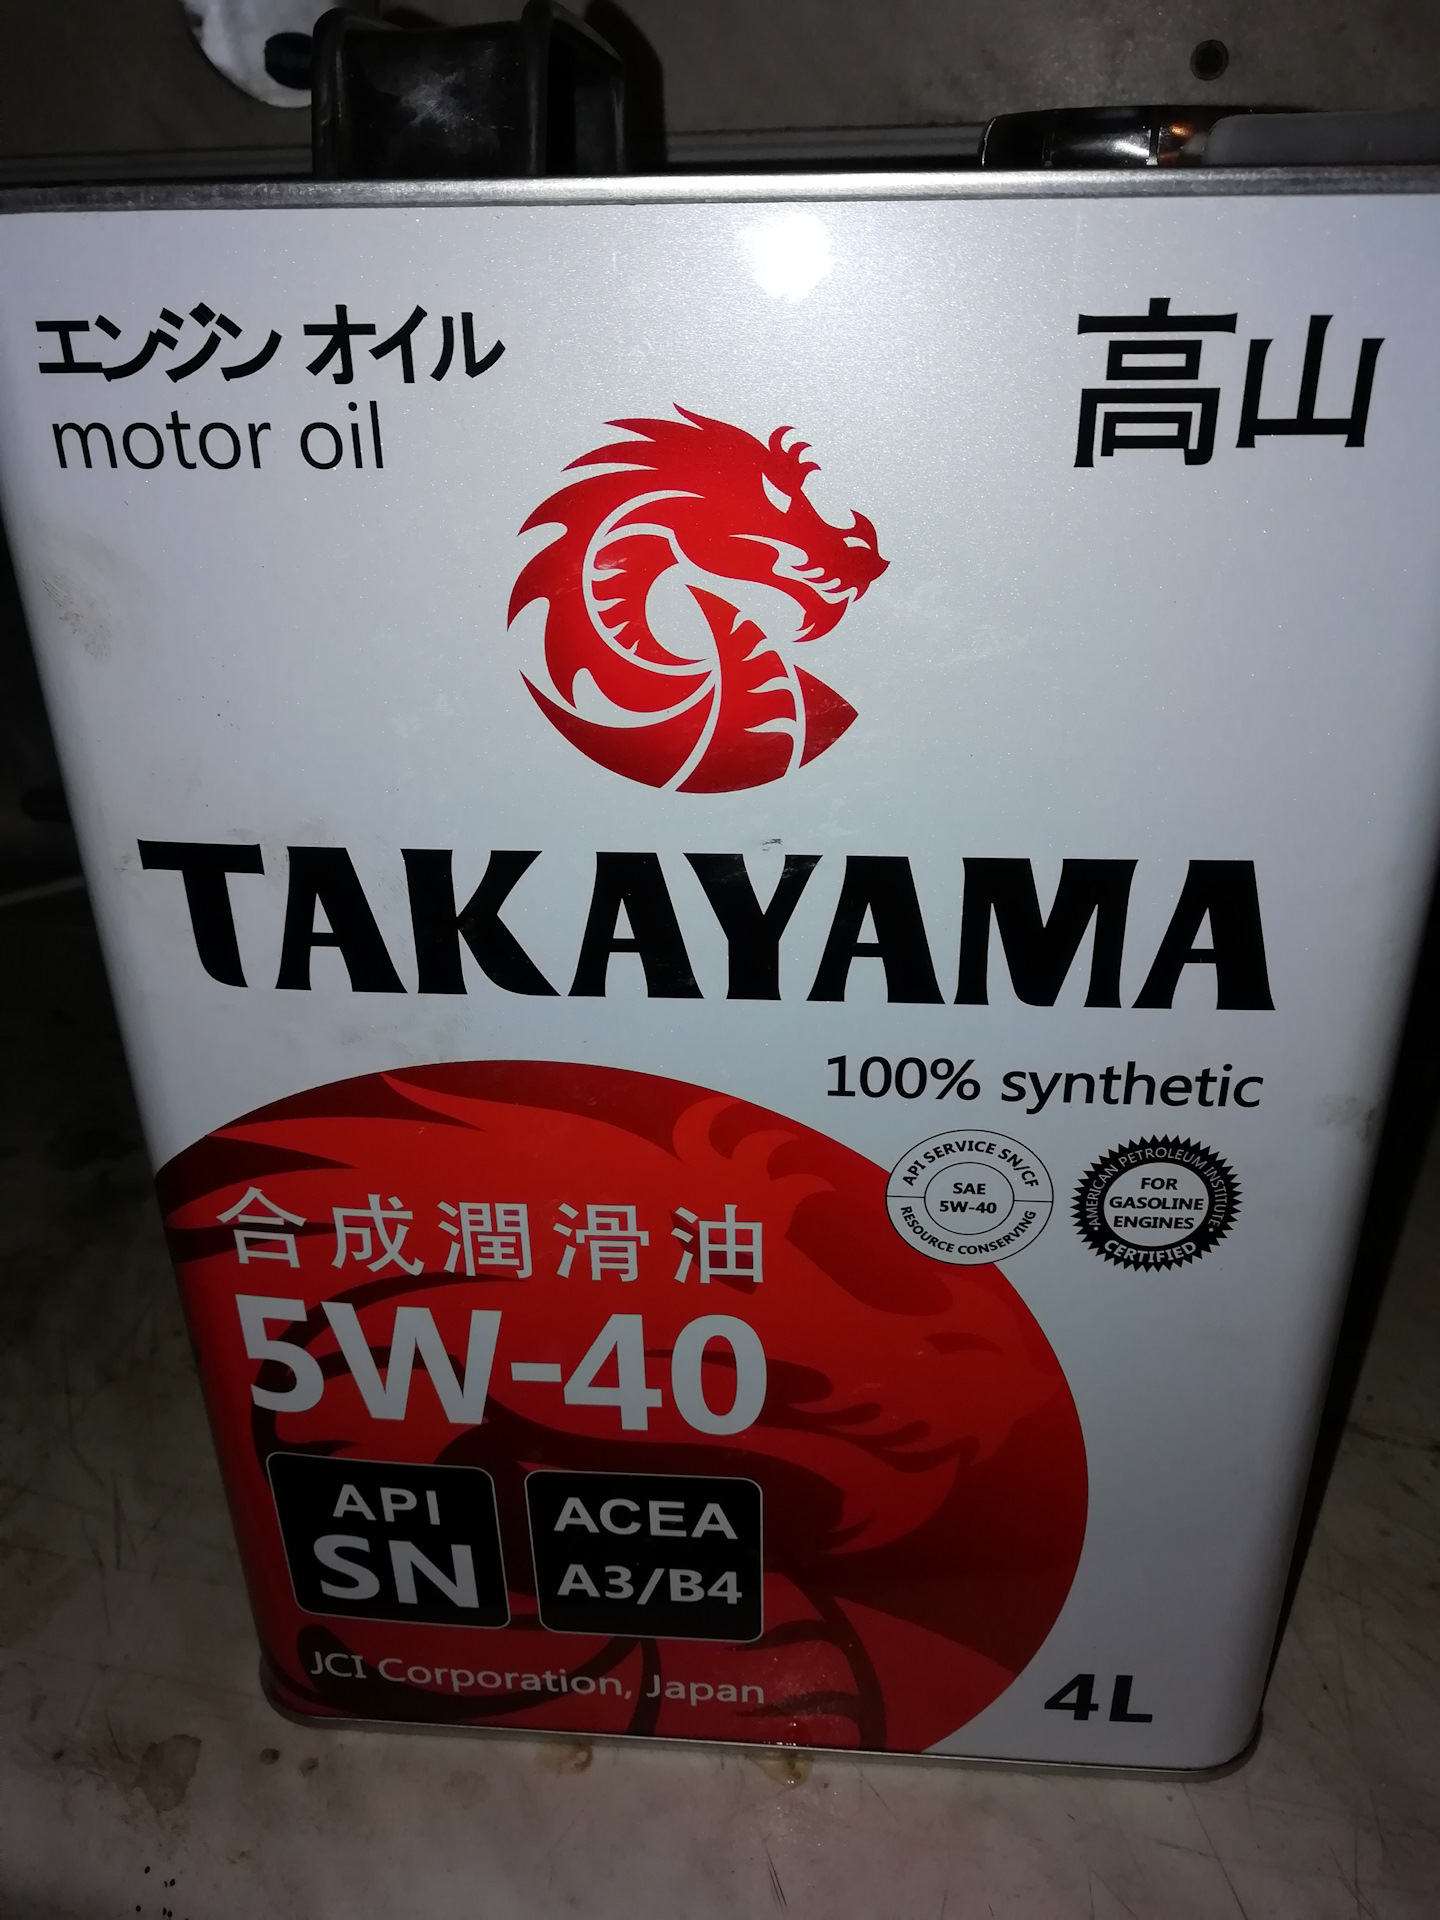 Моторное масло takayama 5w 40. Моторное масло Такаяма 5w40. Японское масло 5w40 Такаяма. Масло Такаяма 5w40 производитель.